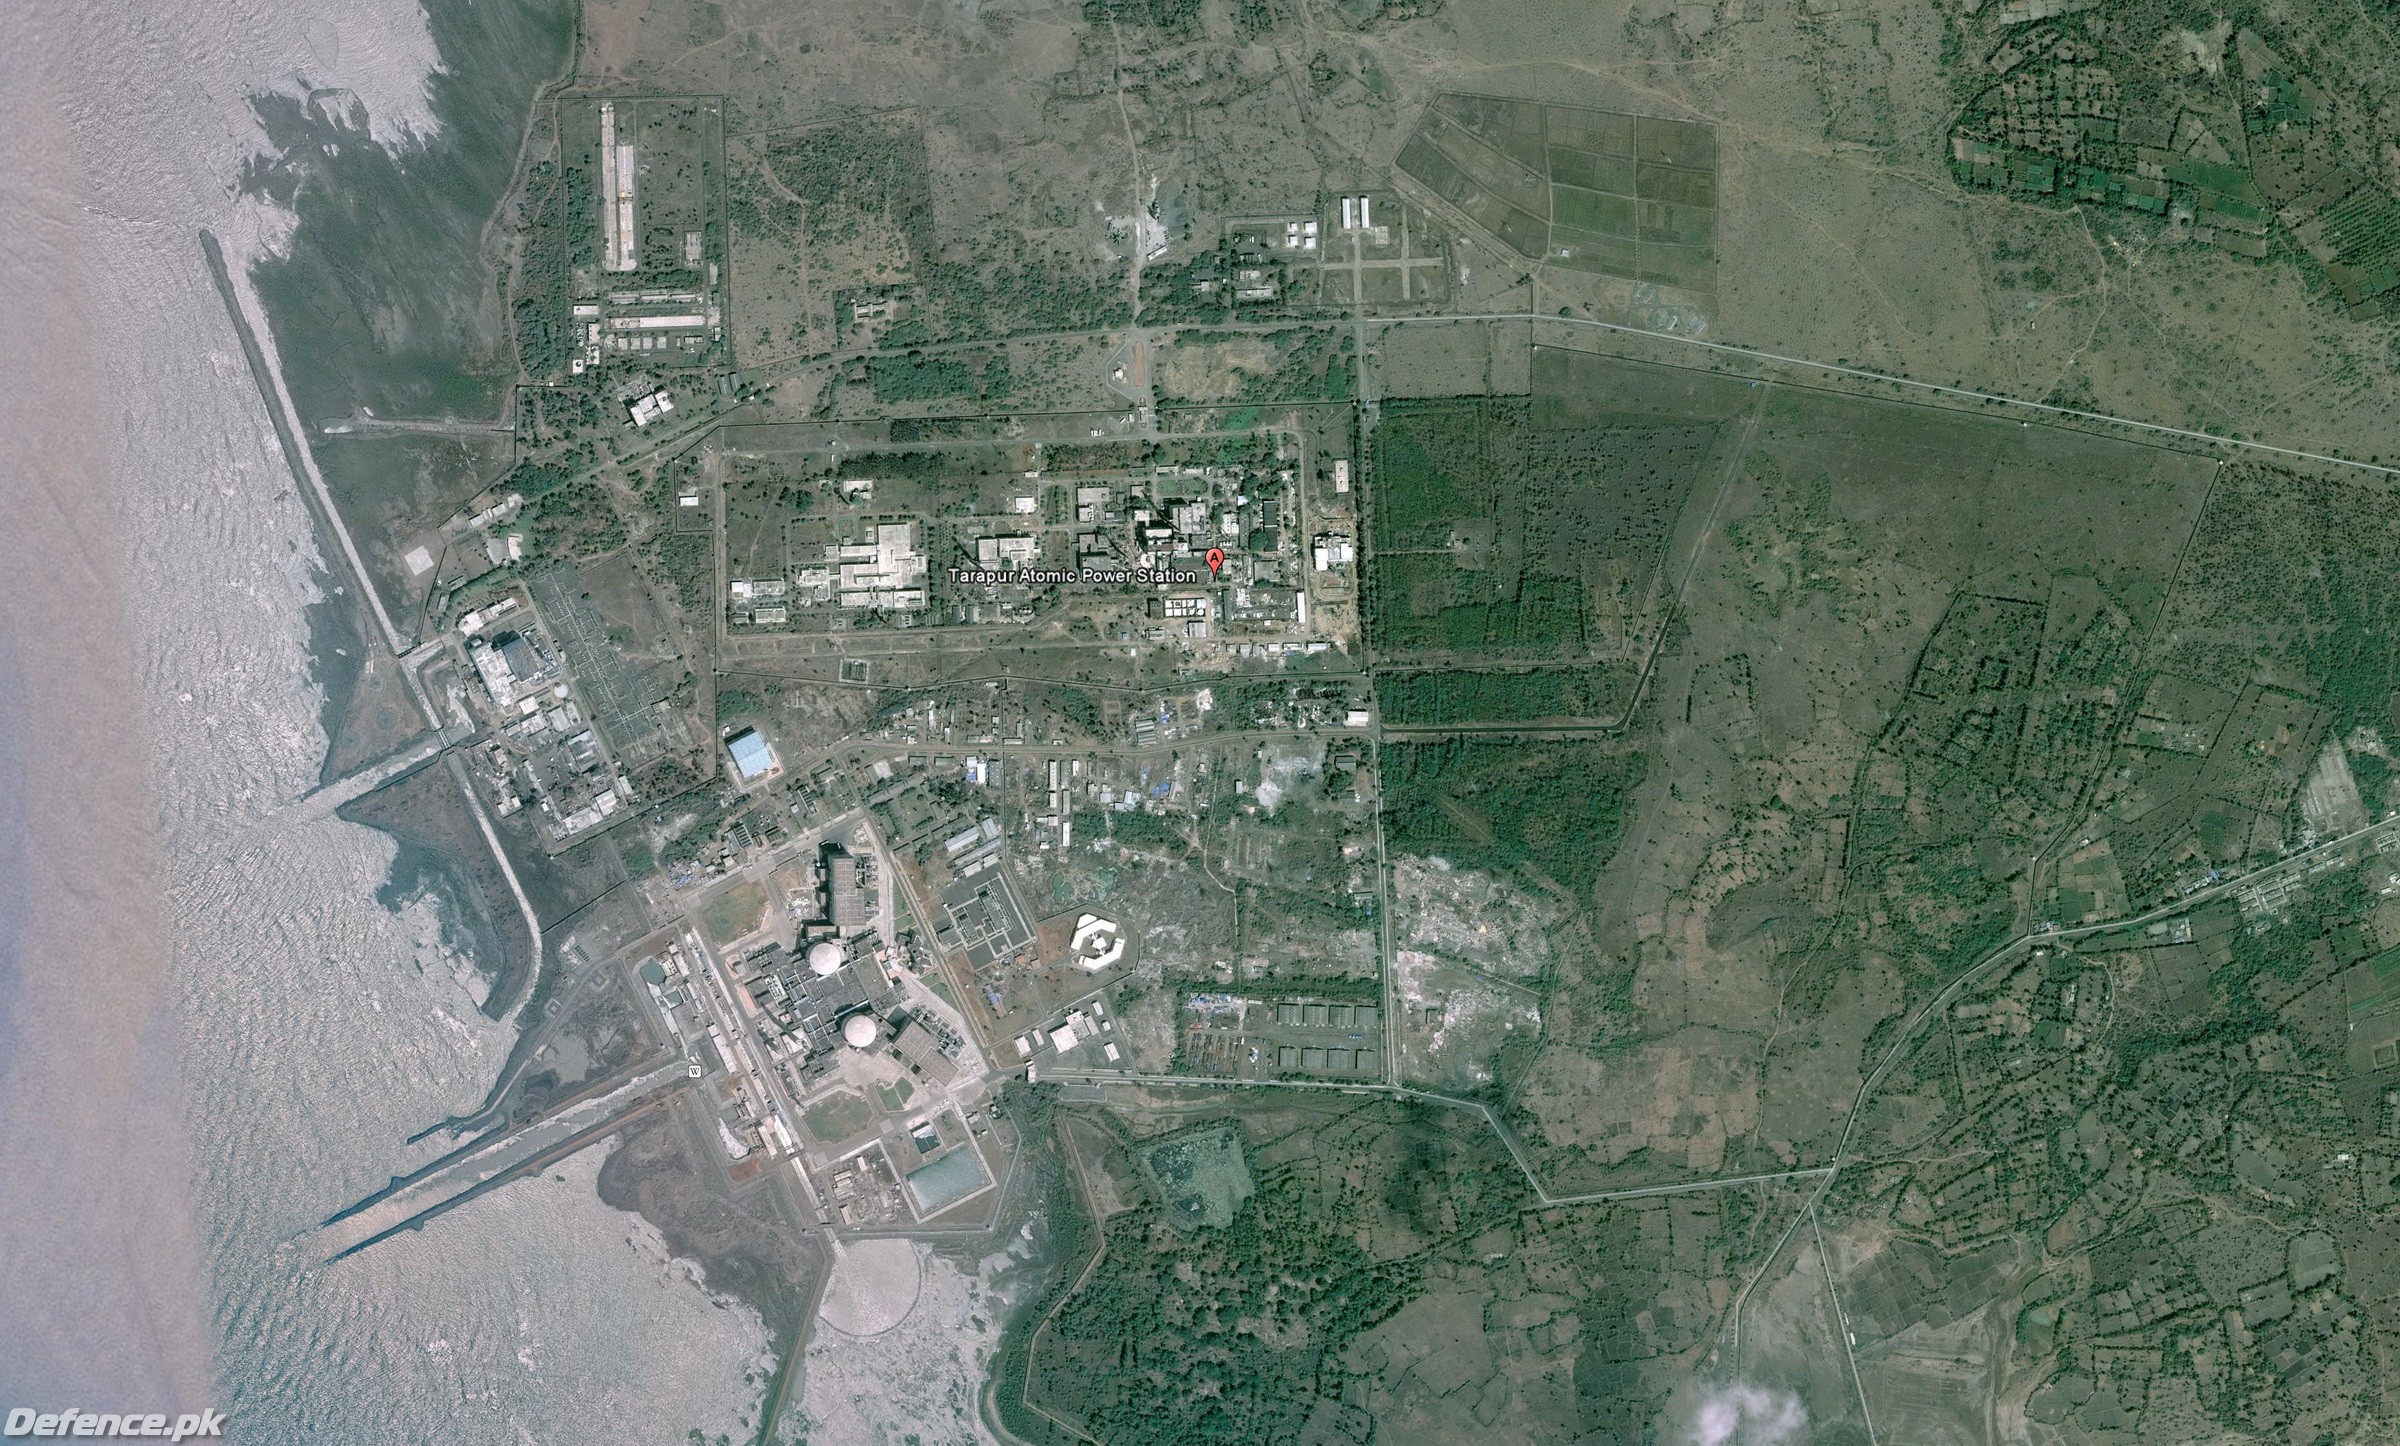 Tarapur Atomic Power Station